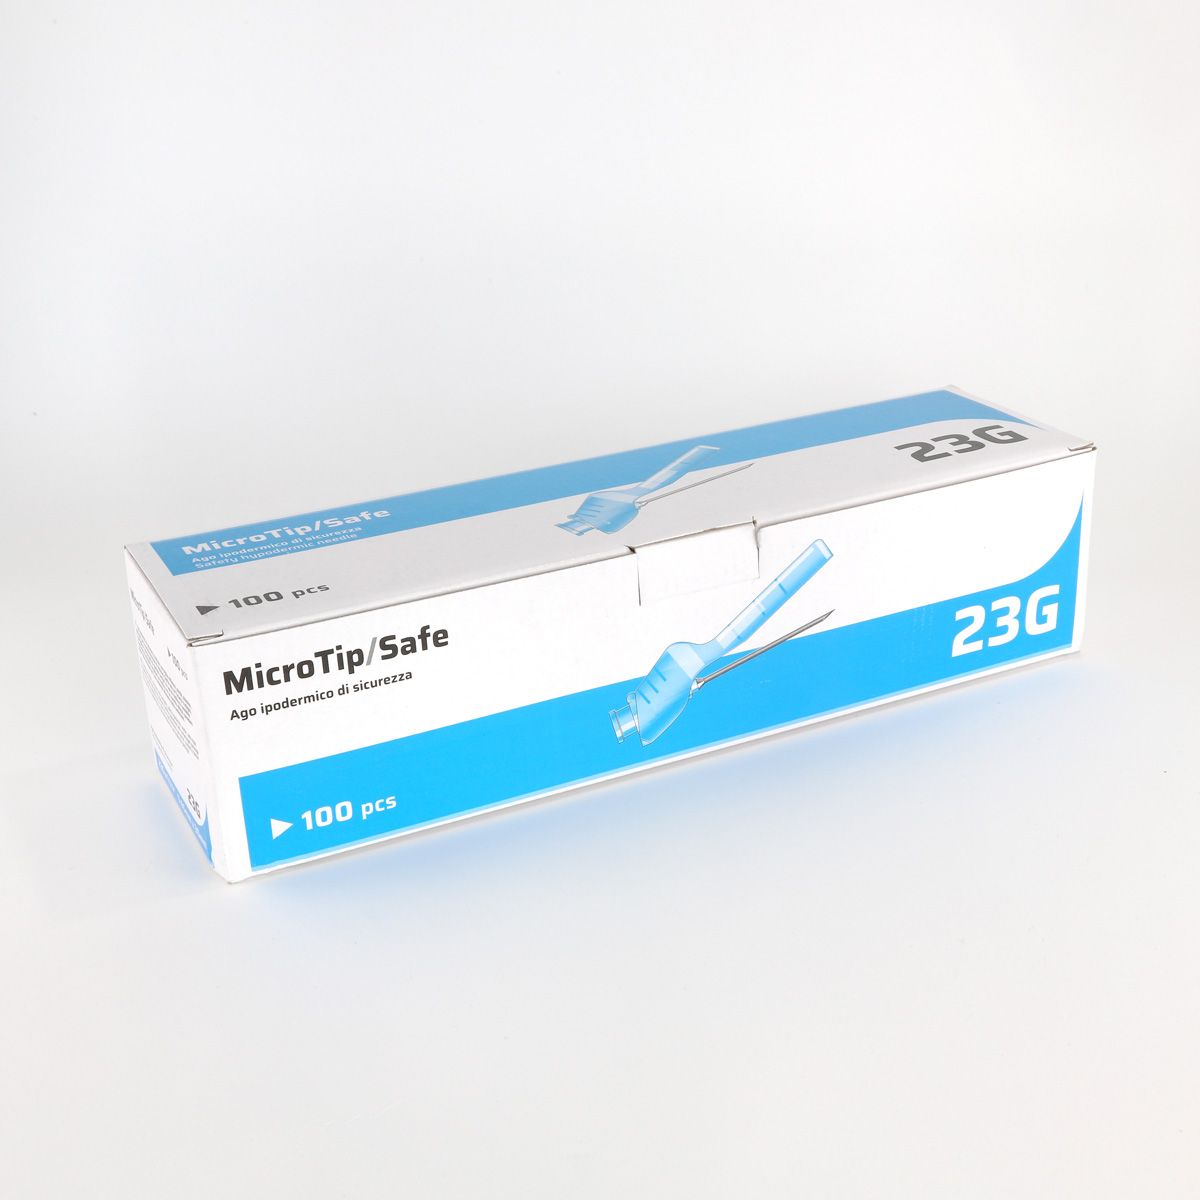 Microtip/Safe – Ago ipodermico di sicurezza in PVC